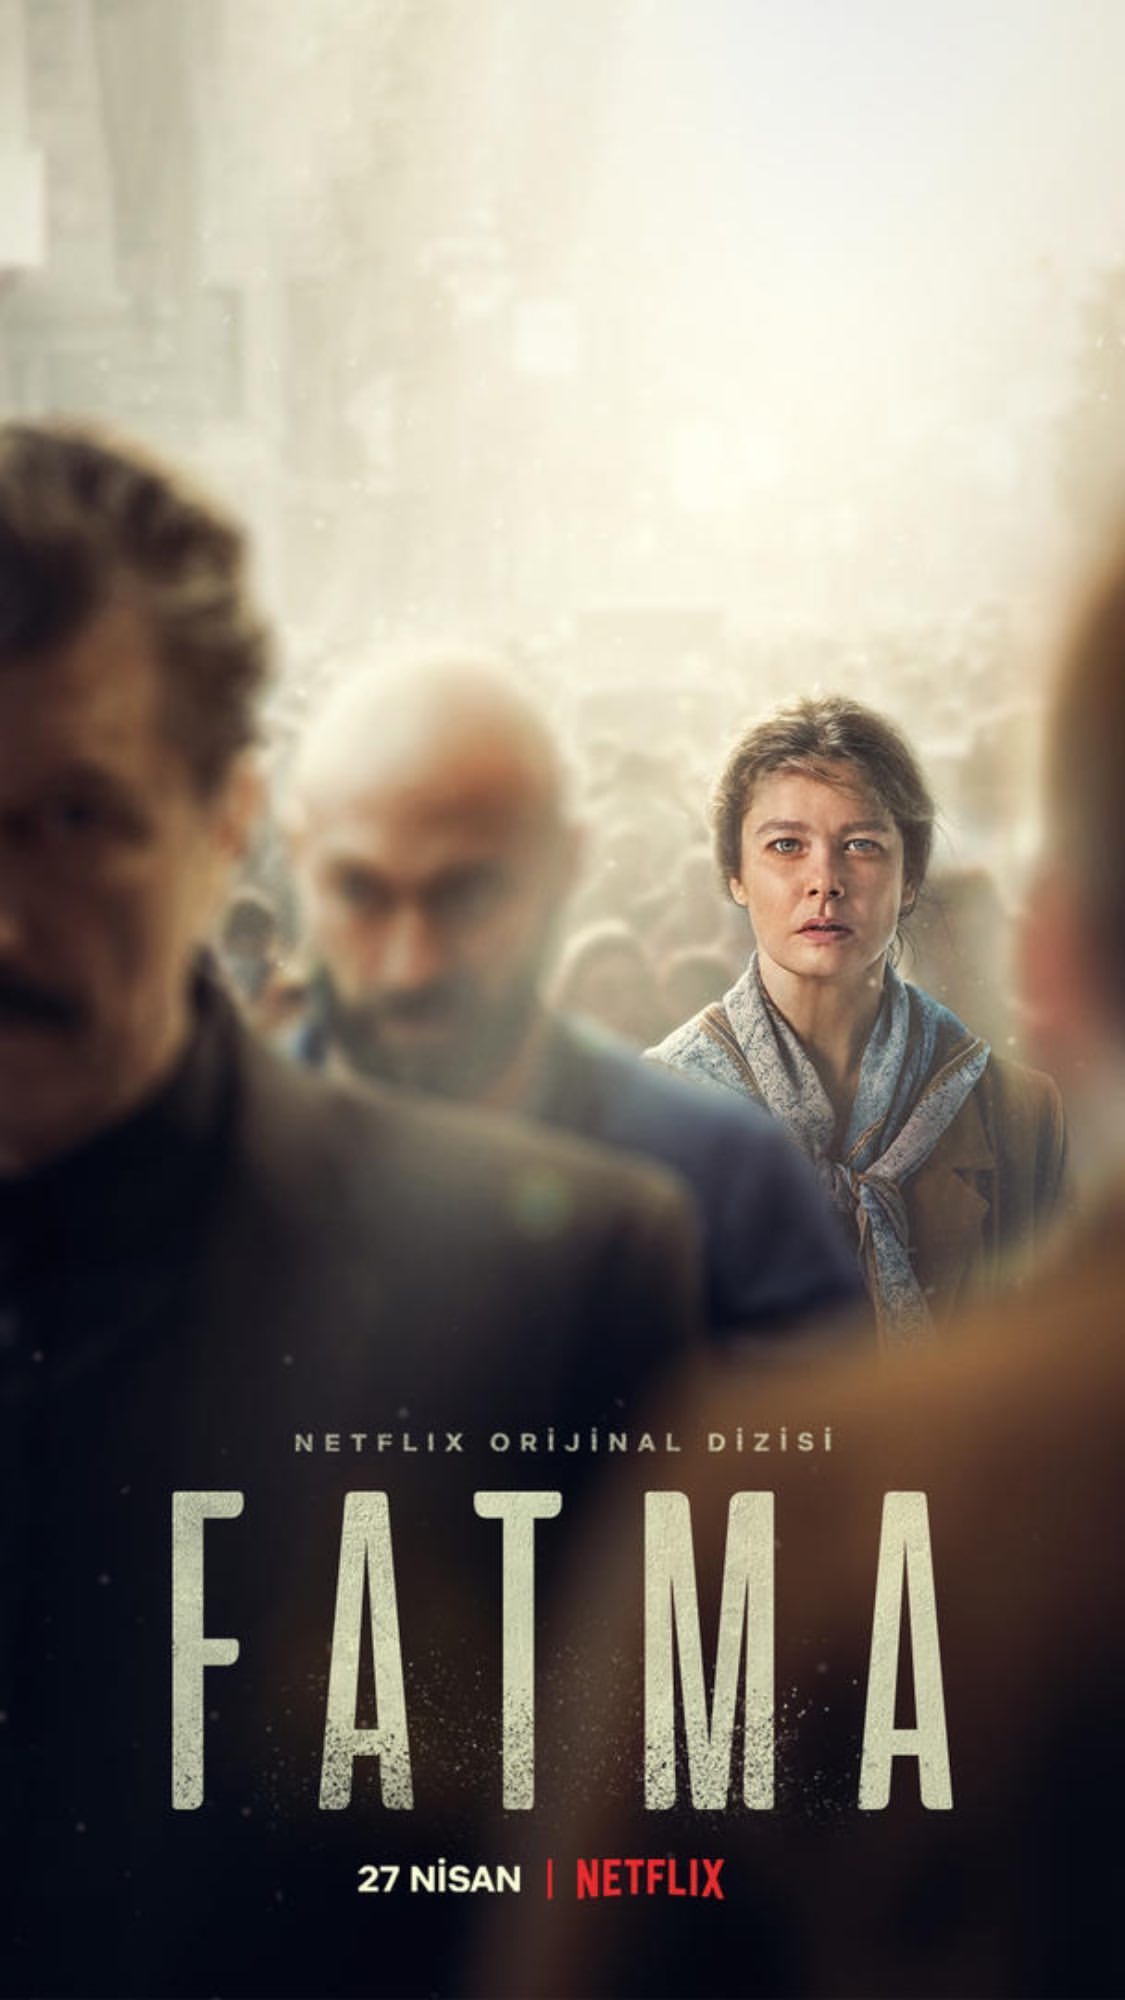 Netflix Fatma Trailer, Netflix Thriller Series, Coming to Netflix in April 2021